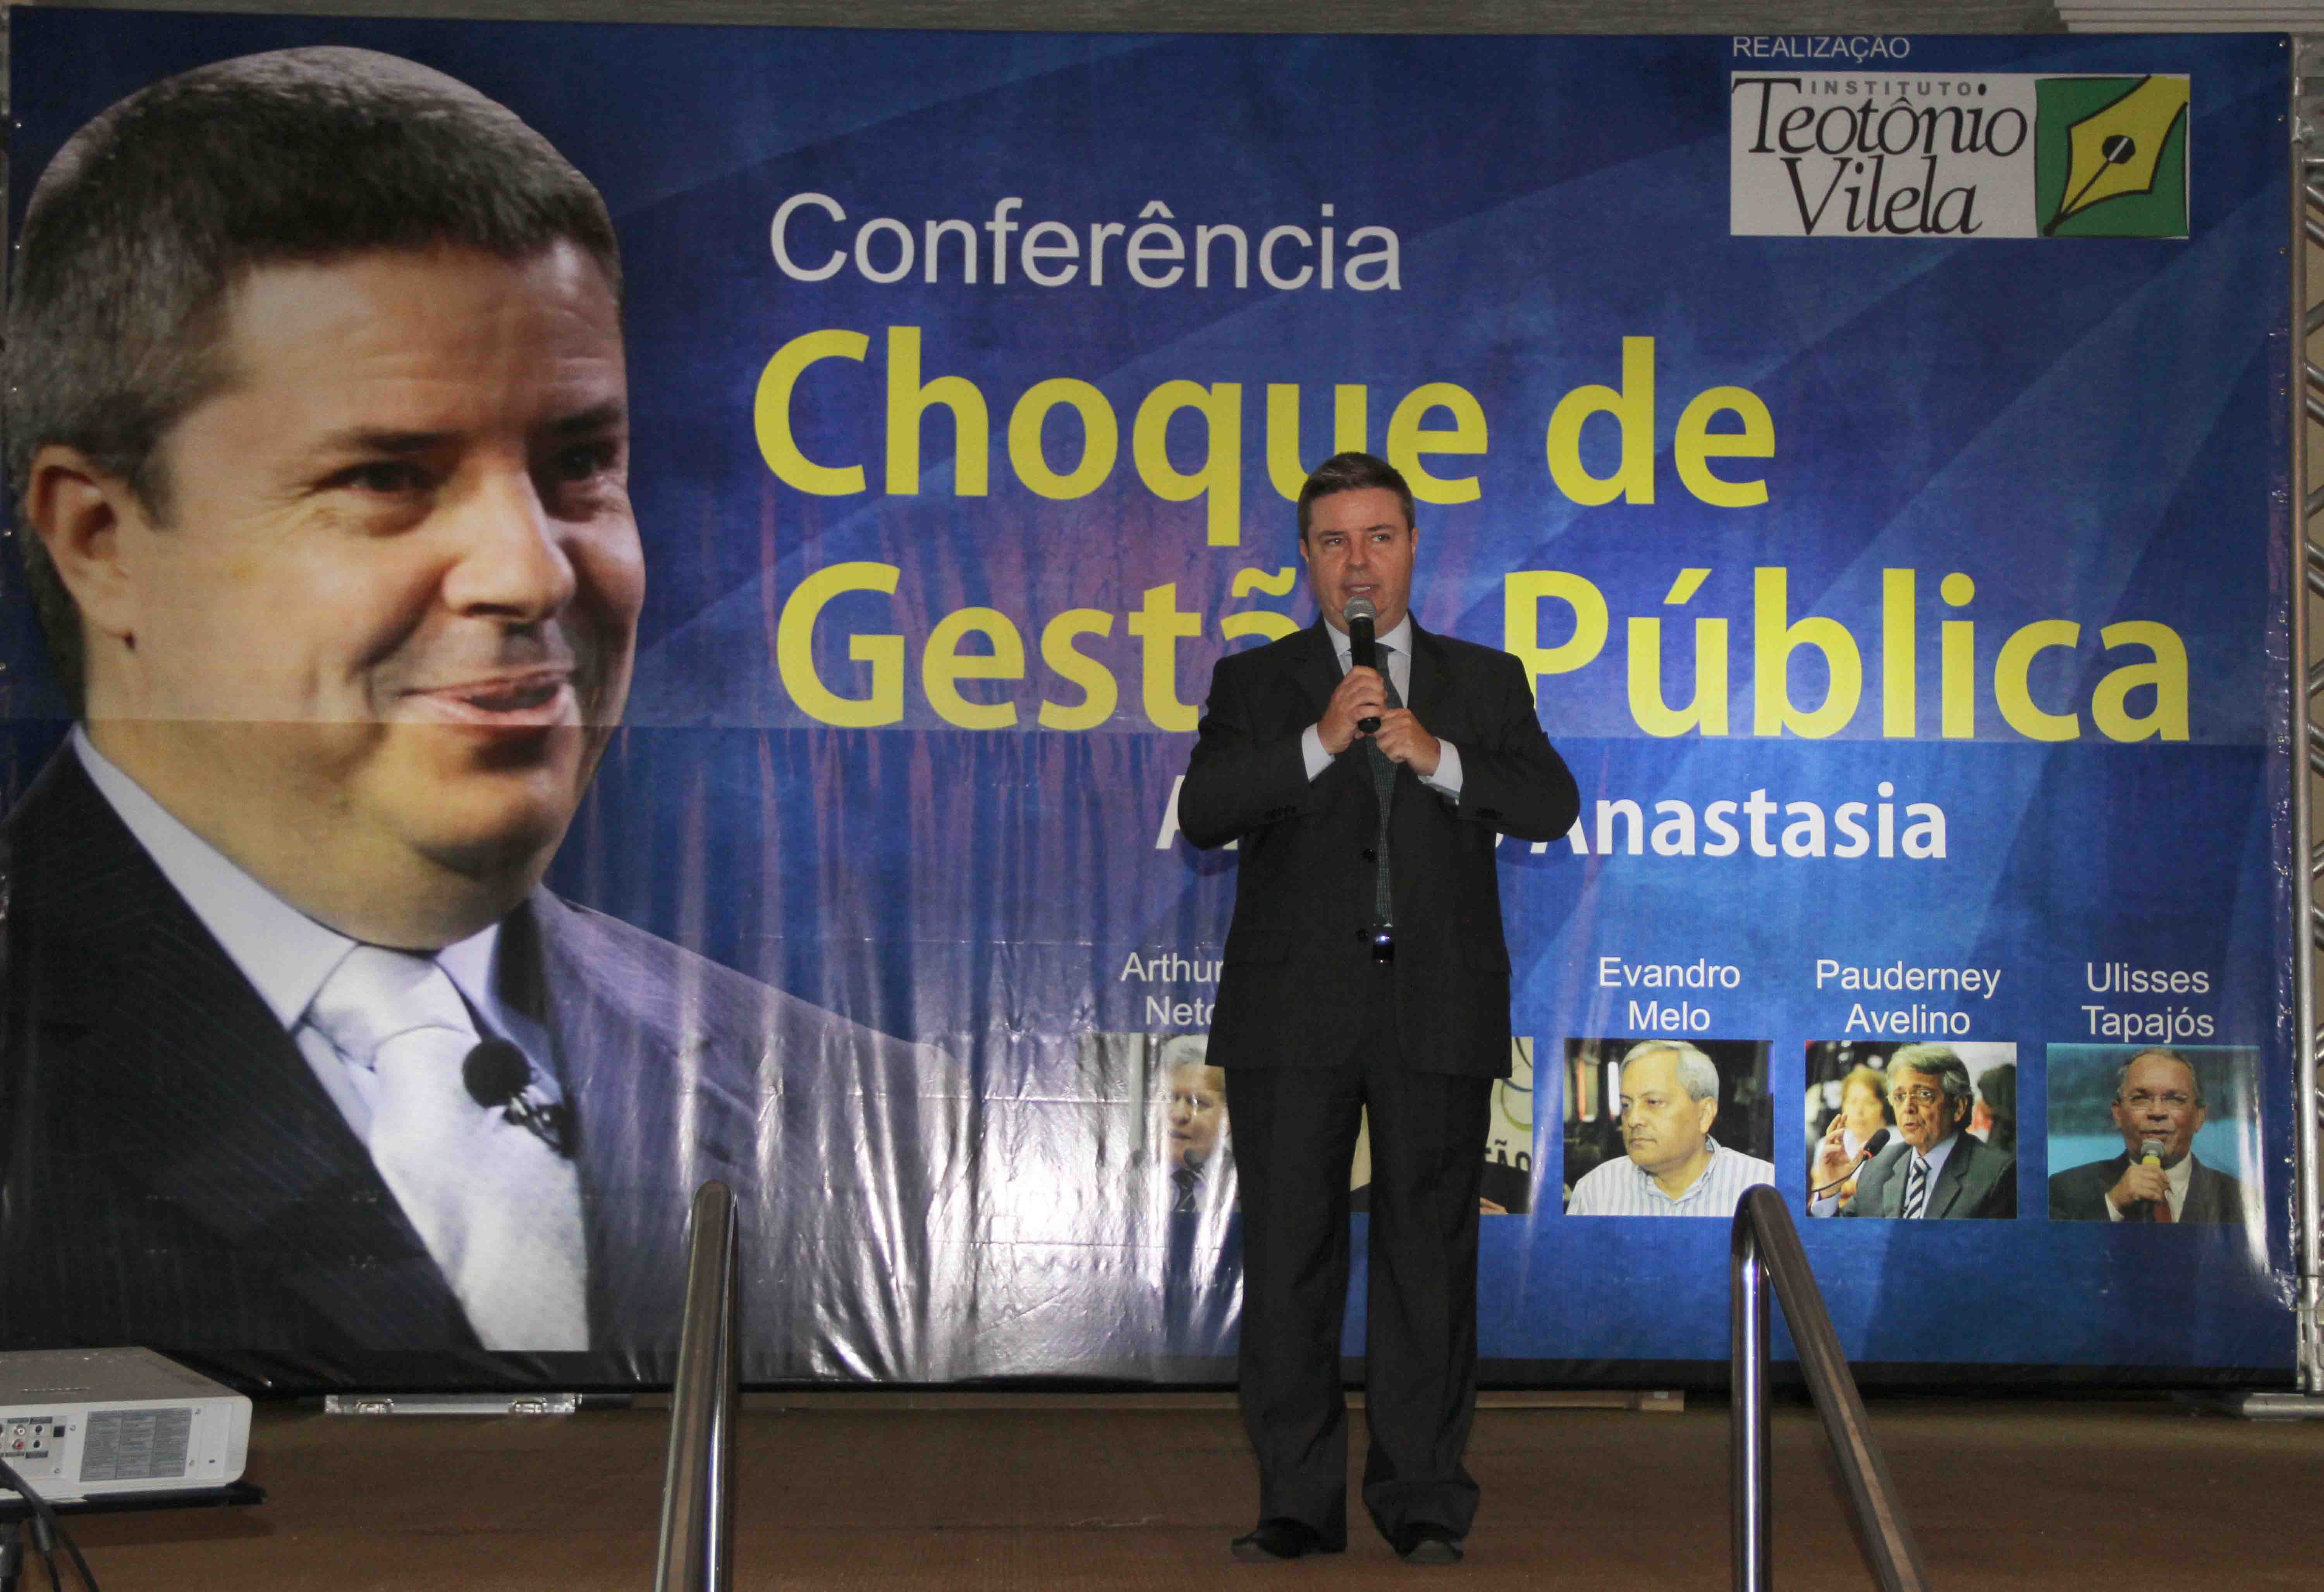 O governador Antonio Anastasia participa da conferência “Choque de Gestão Pública”, organizado pelo Instituto Teotônio Vilela (ITV) do Amazonas. Data: 22-02-13 Local: Manaus Crédito: Arlesson Sicsu